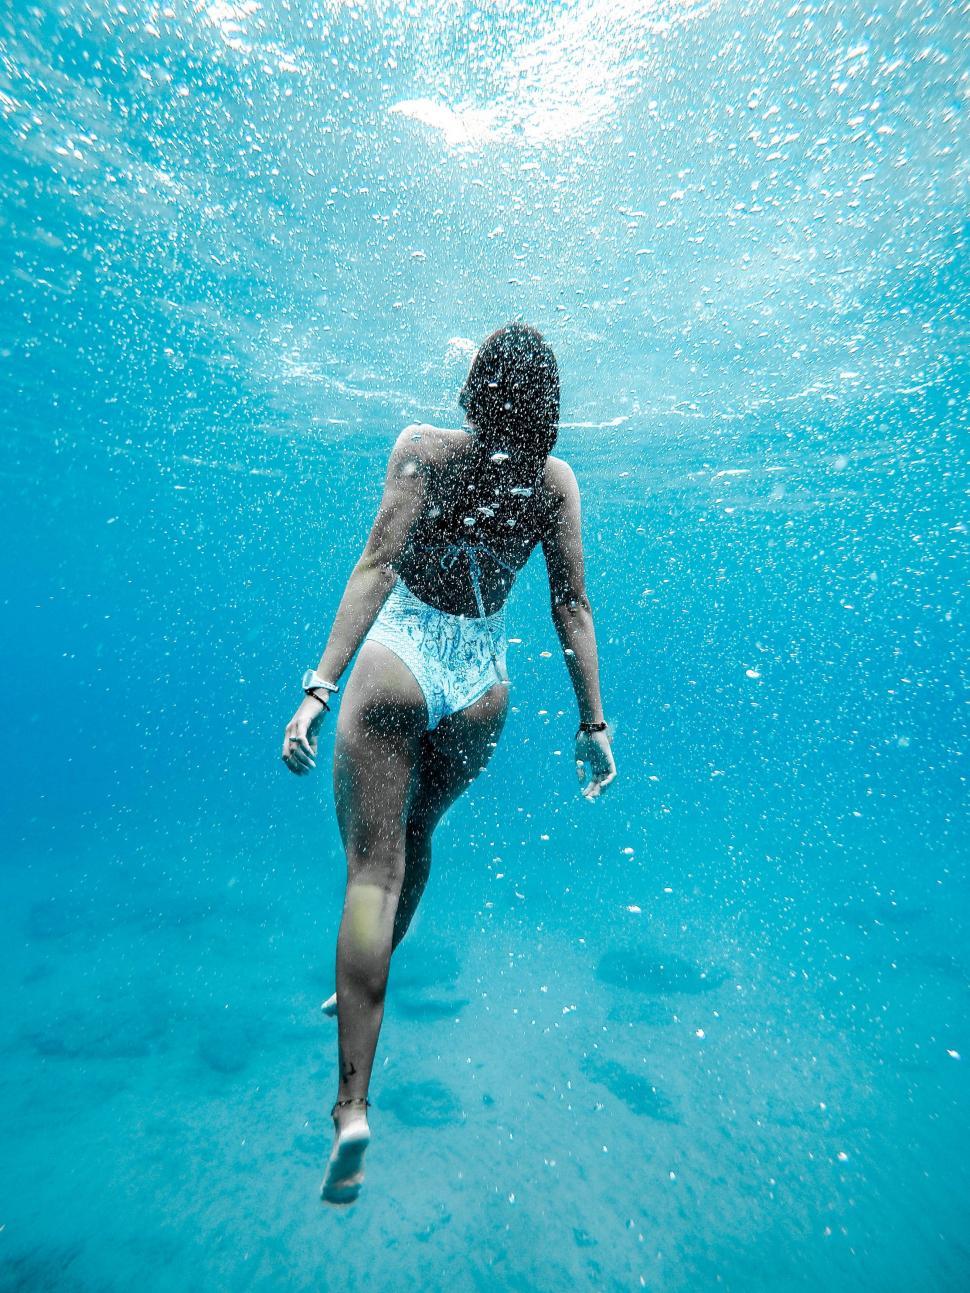 Free Image of Woman in Bikini Swimming Underwater 